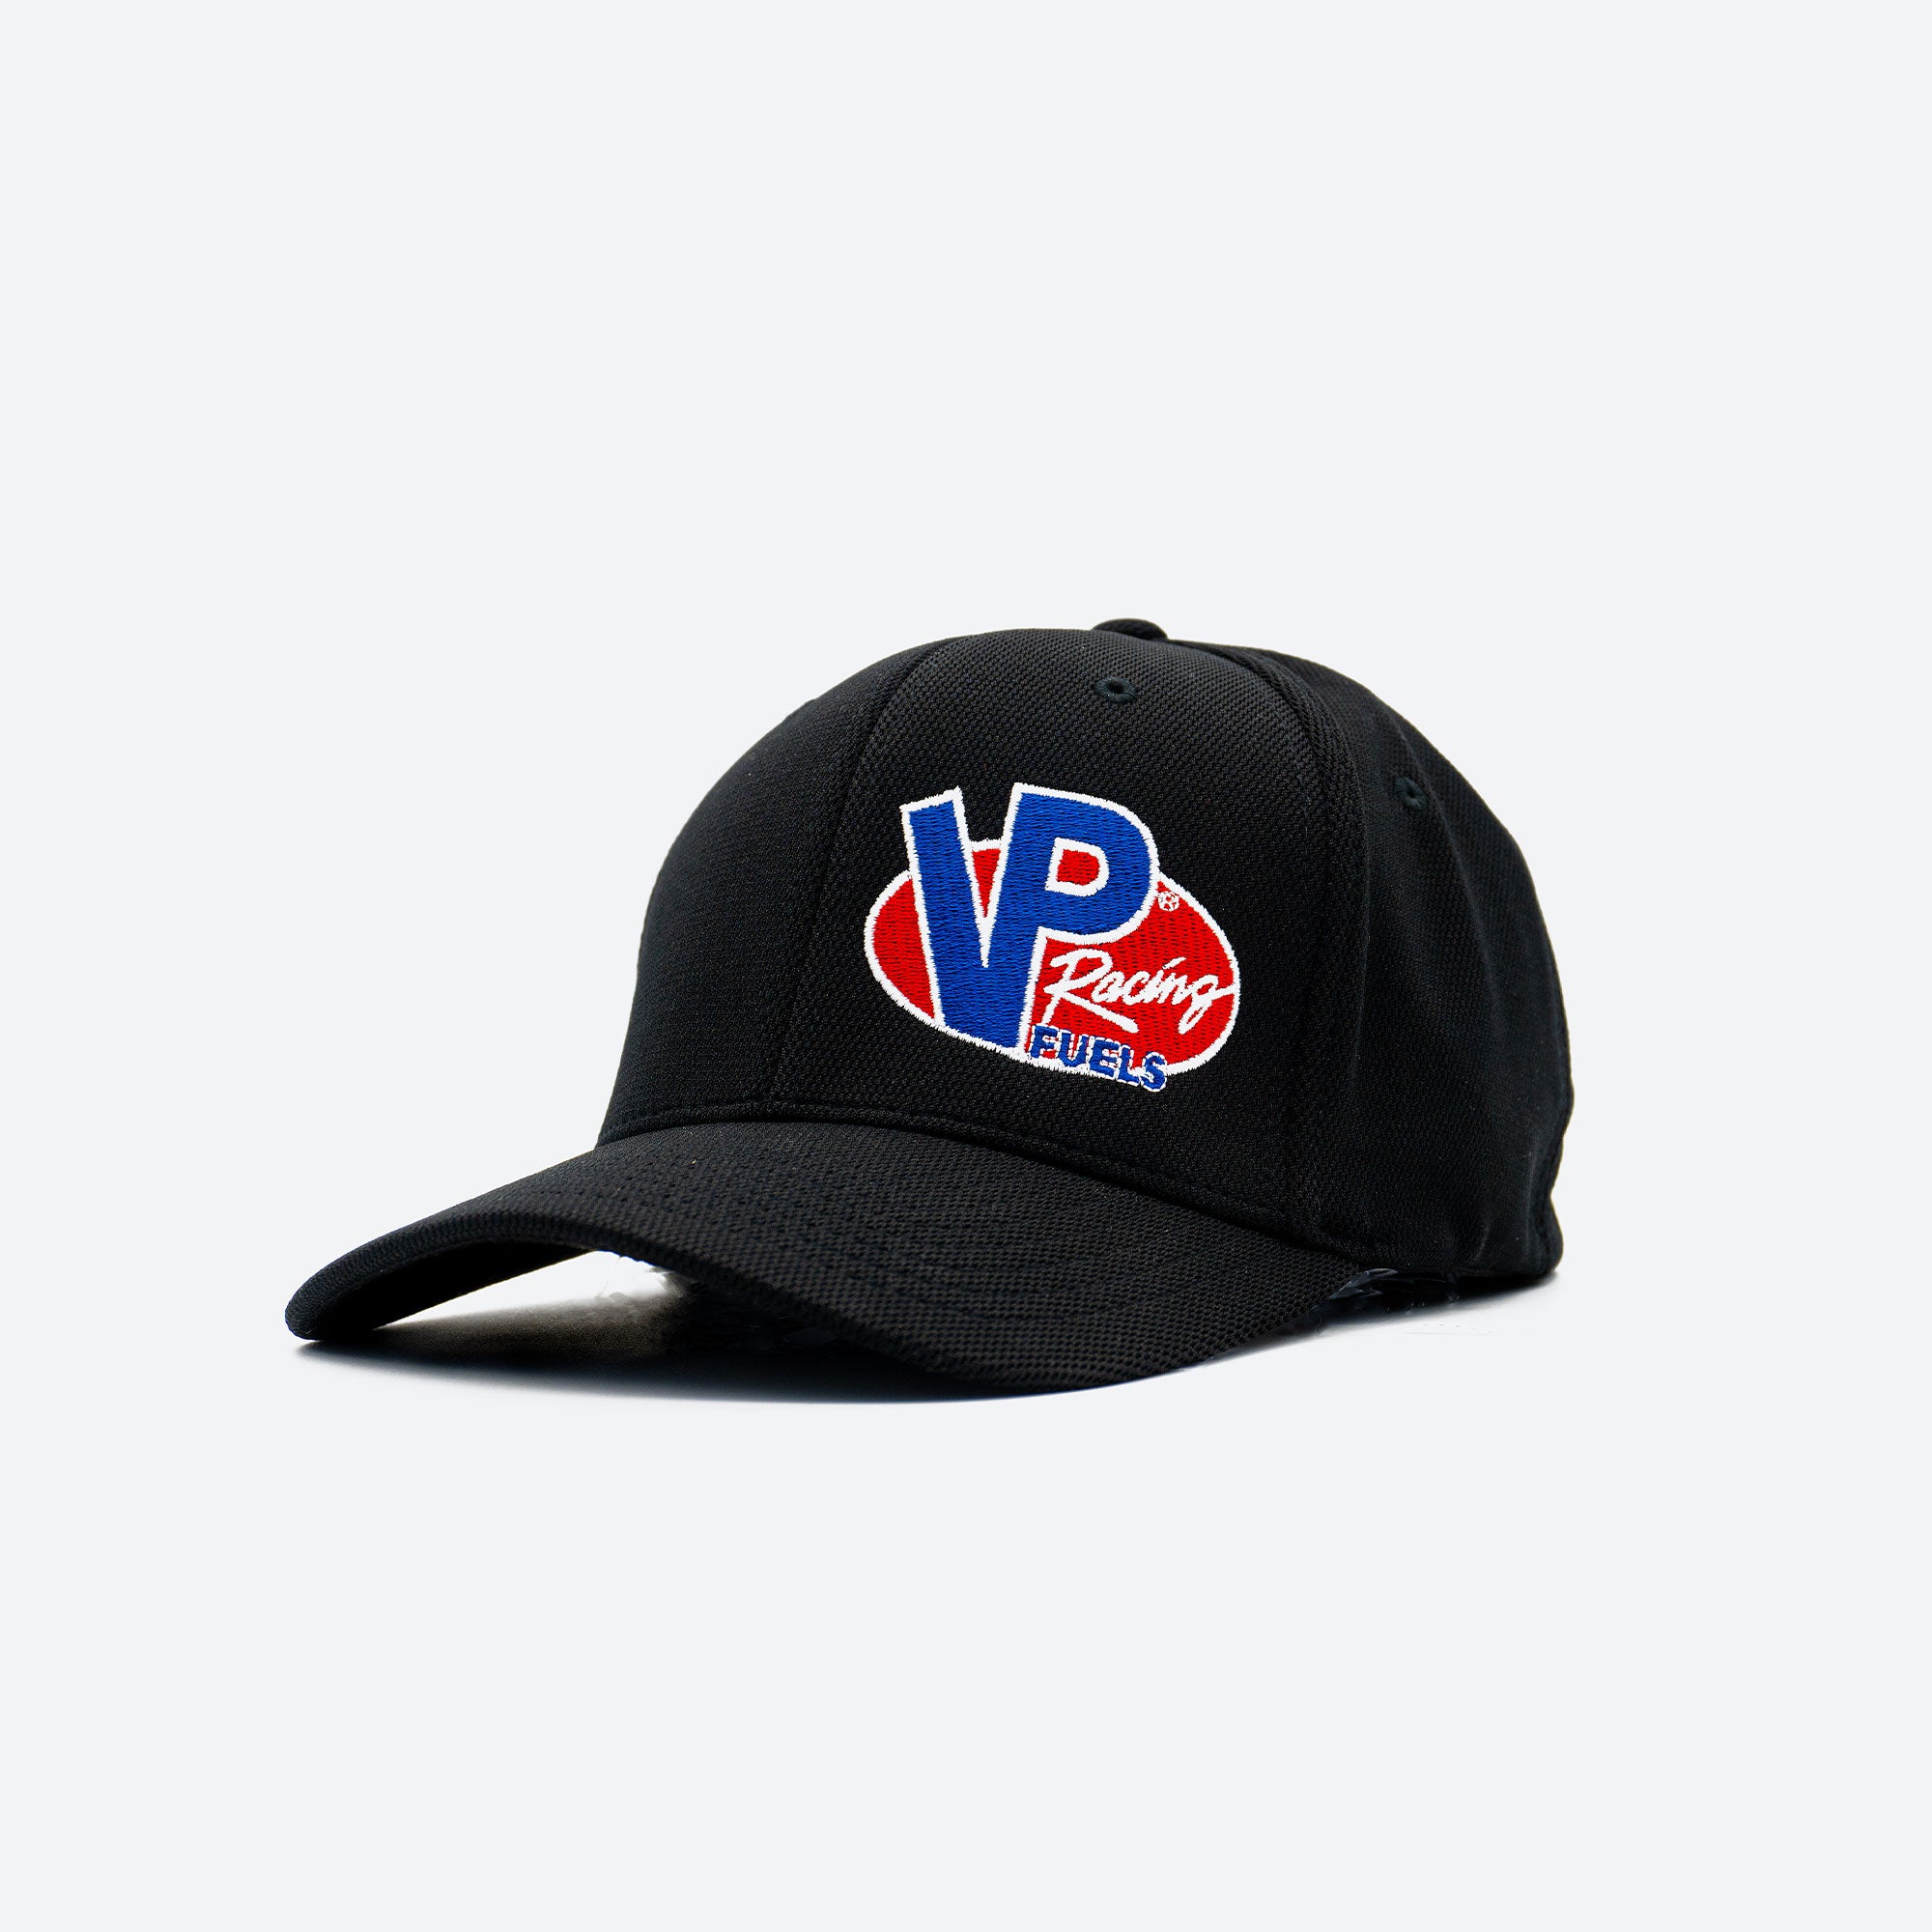 VP Racing Fuels - Logo Hat